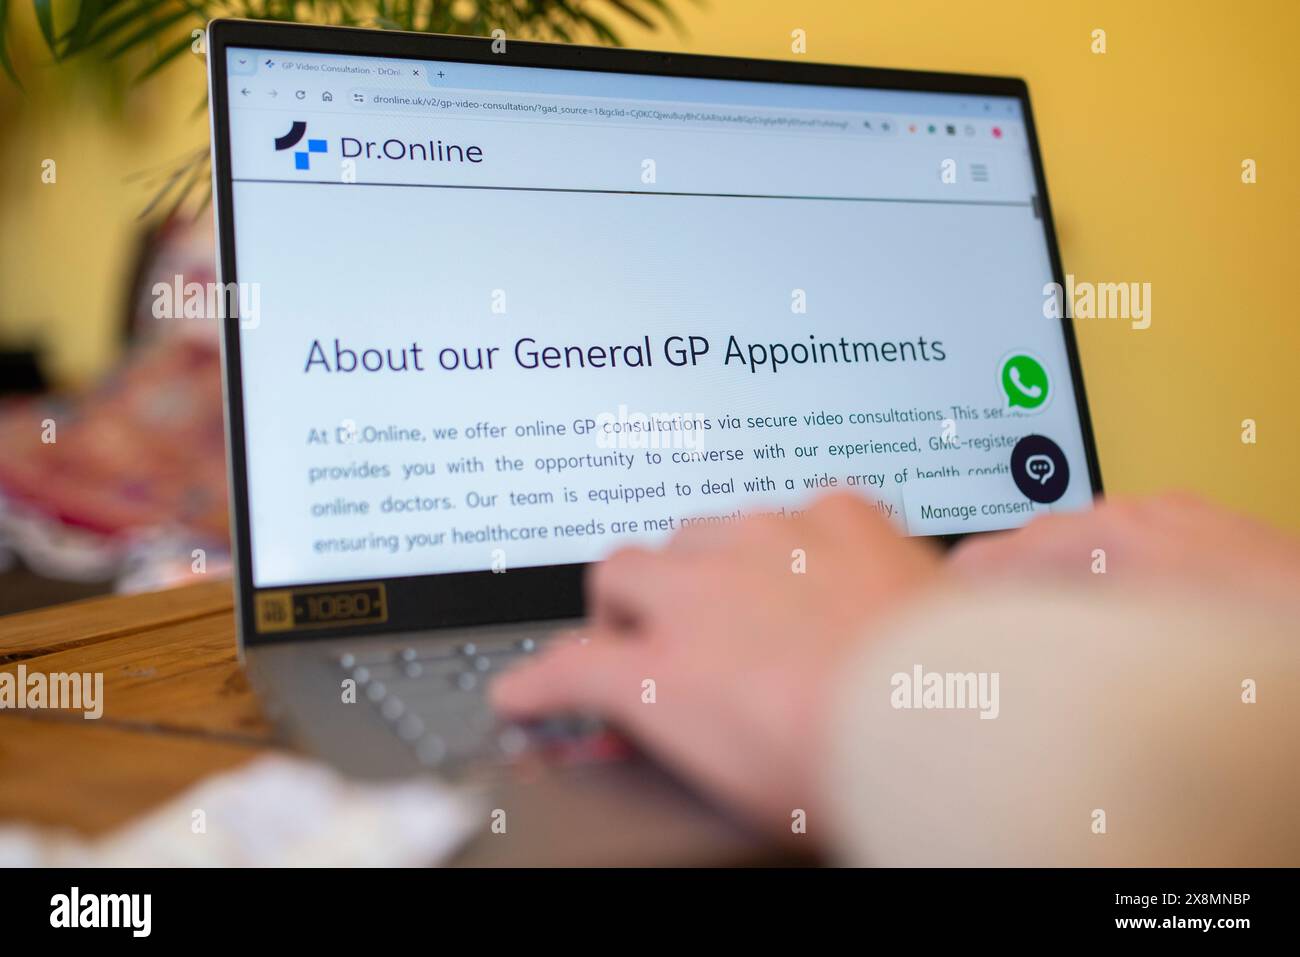 Persona che utilizza un computer portatile per visualizzare un servizio di consultazione online GP, evidenziando l'assistenza sanitaria digitale e gli appuntamenti medici virtuali Foto Stock